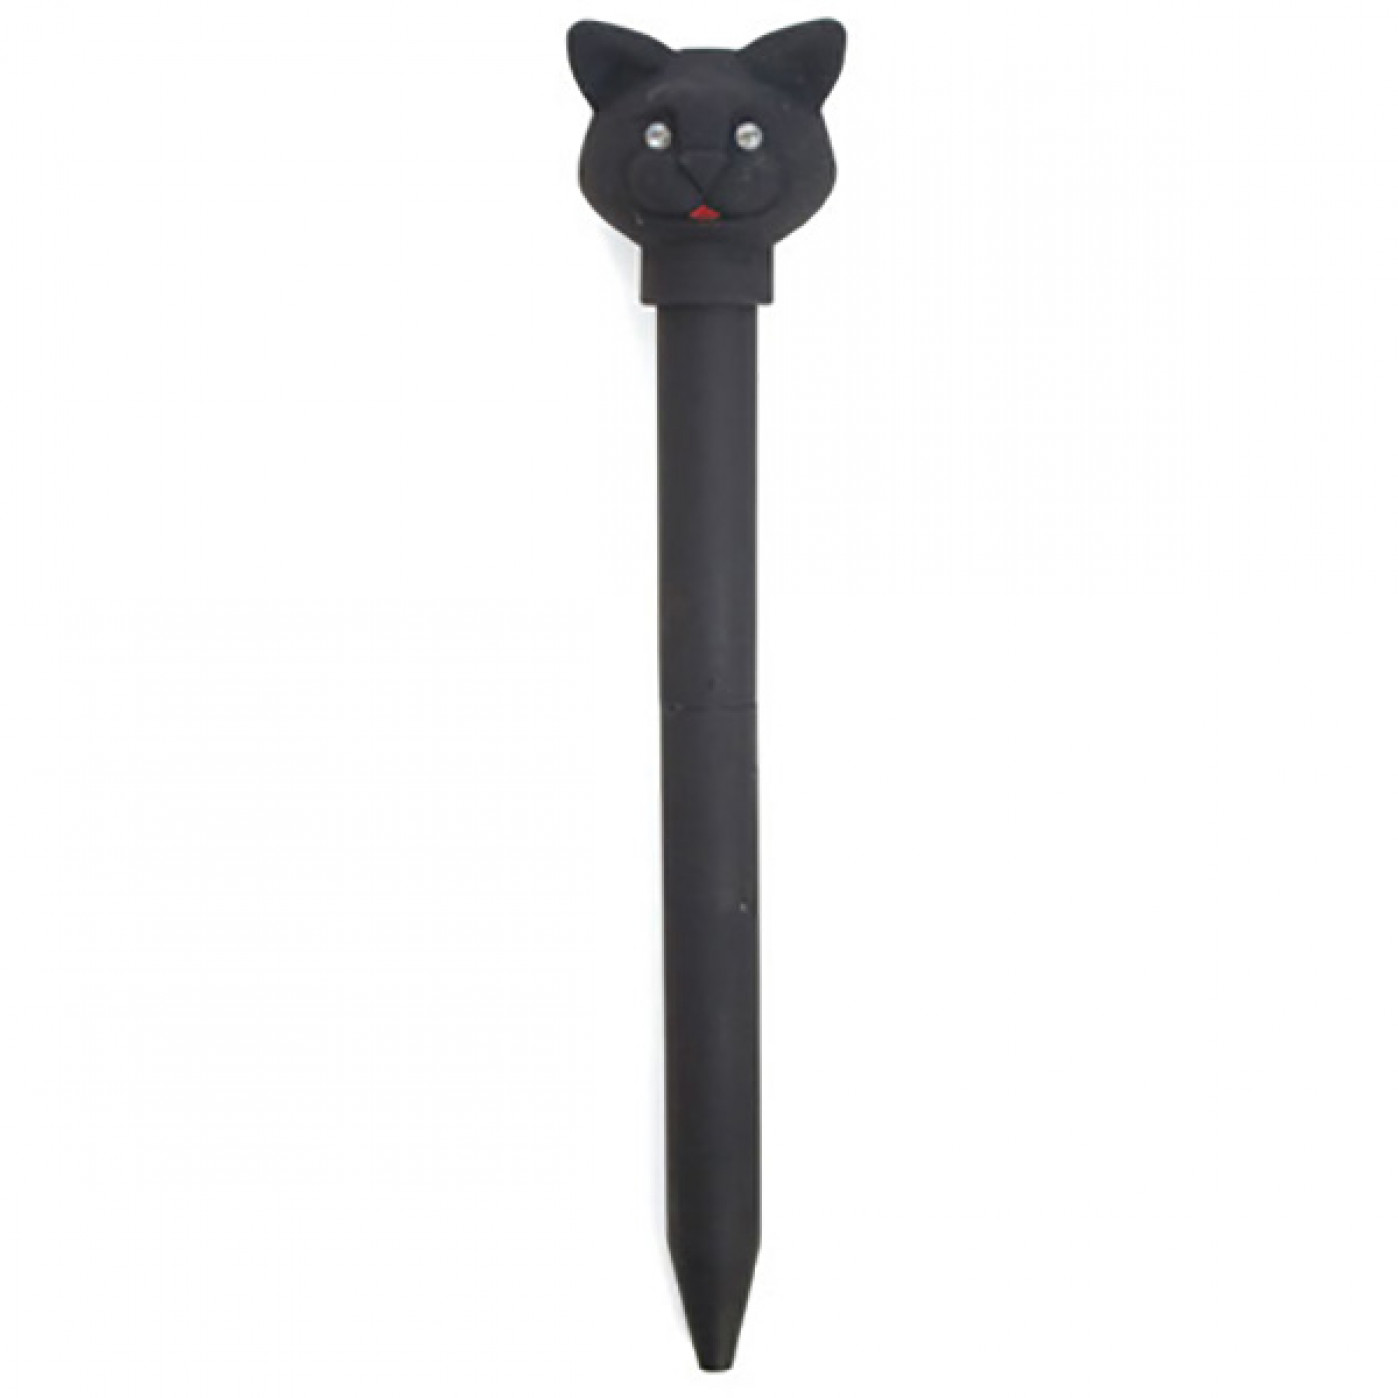 Cat pen. Ручка с котиком. Ручка в виде кошки. Ручка шариковая с котиком. Шариковая ручка с кошкой.